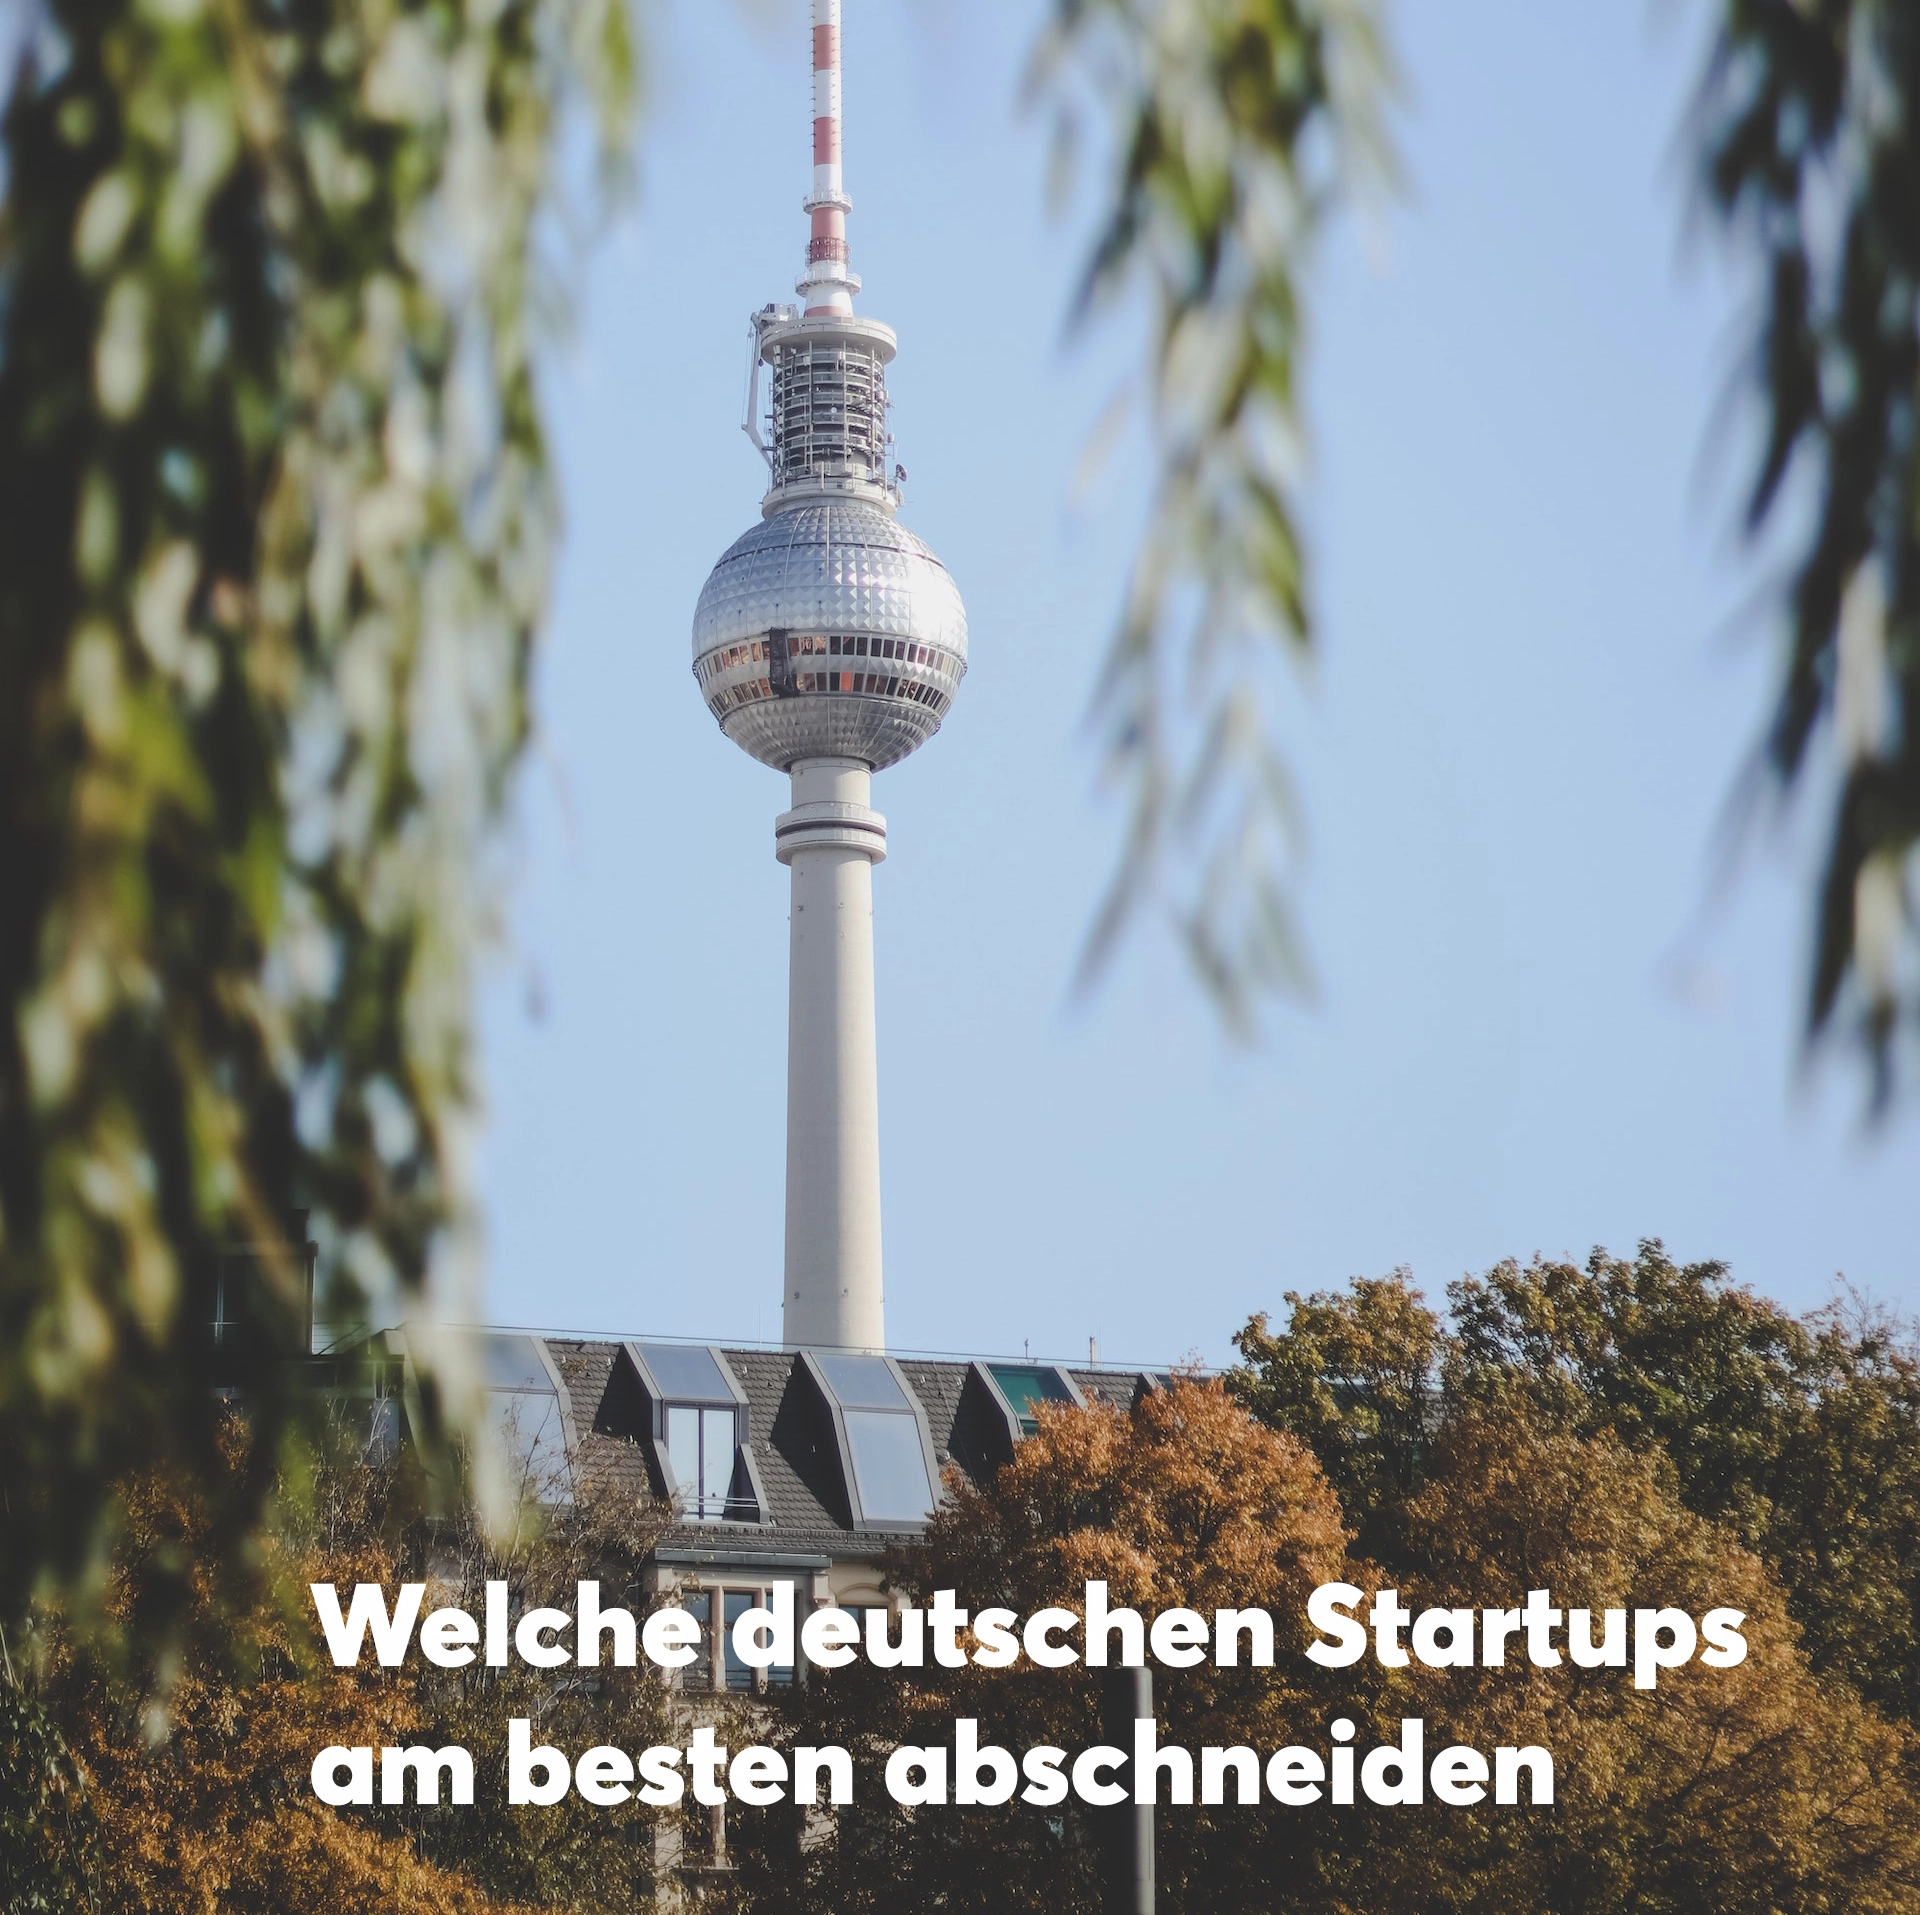 Welche deutschen Startups am besten abschneiden